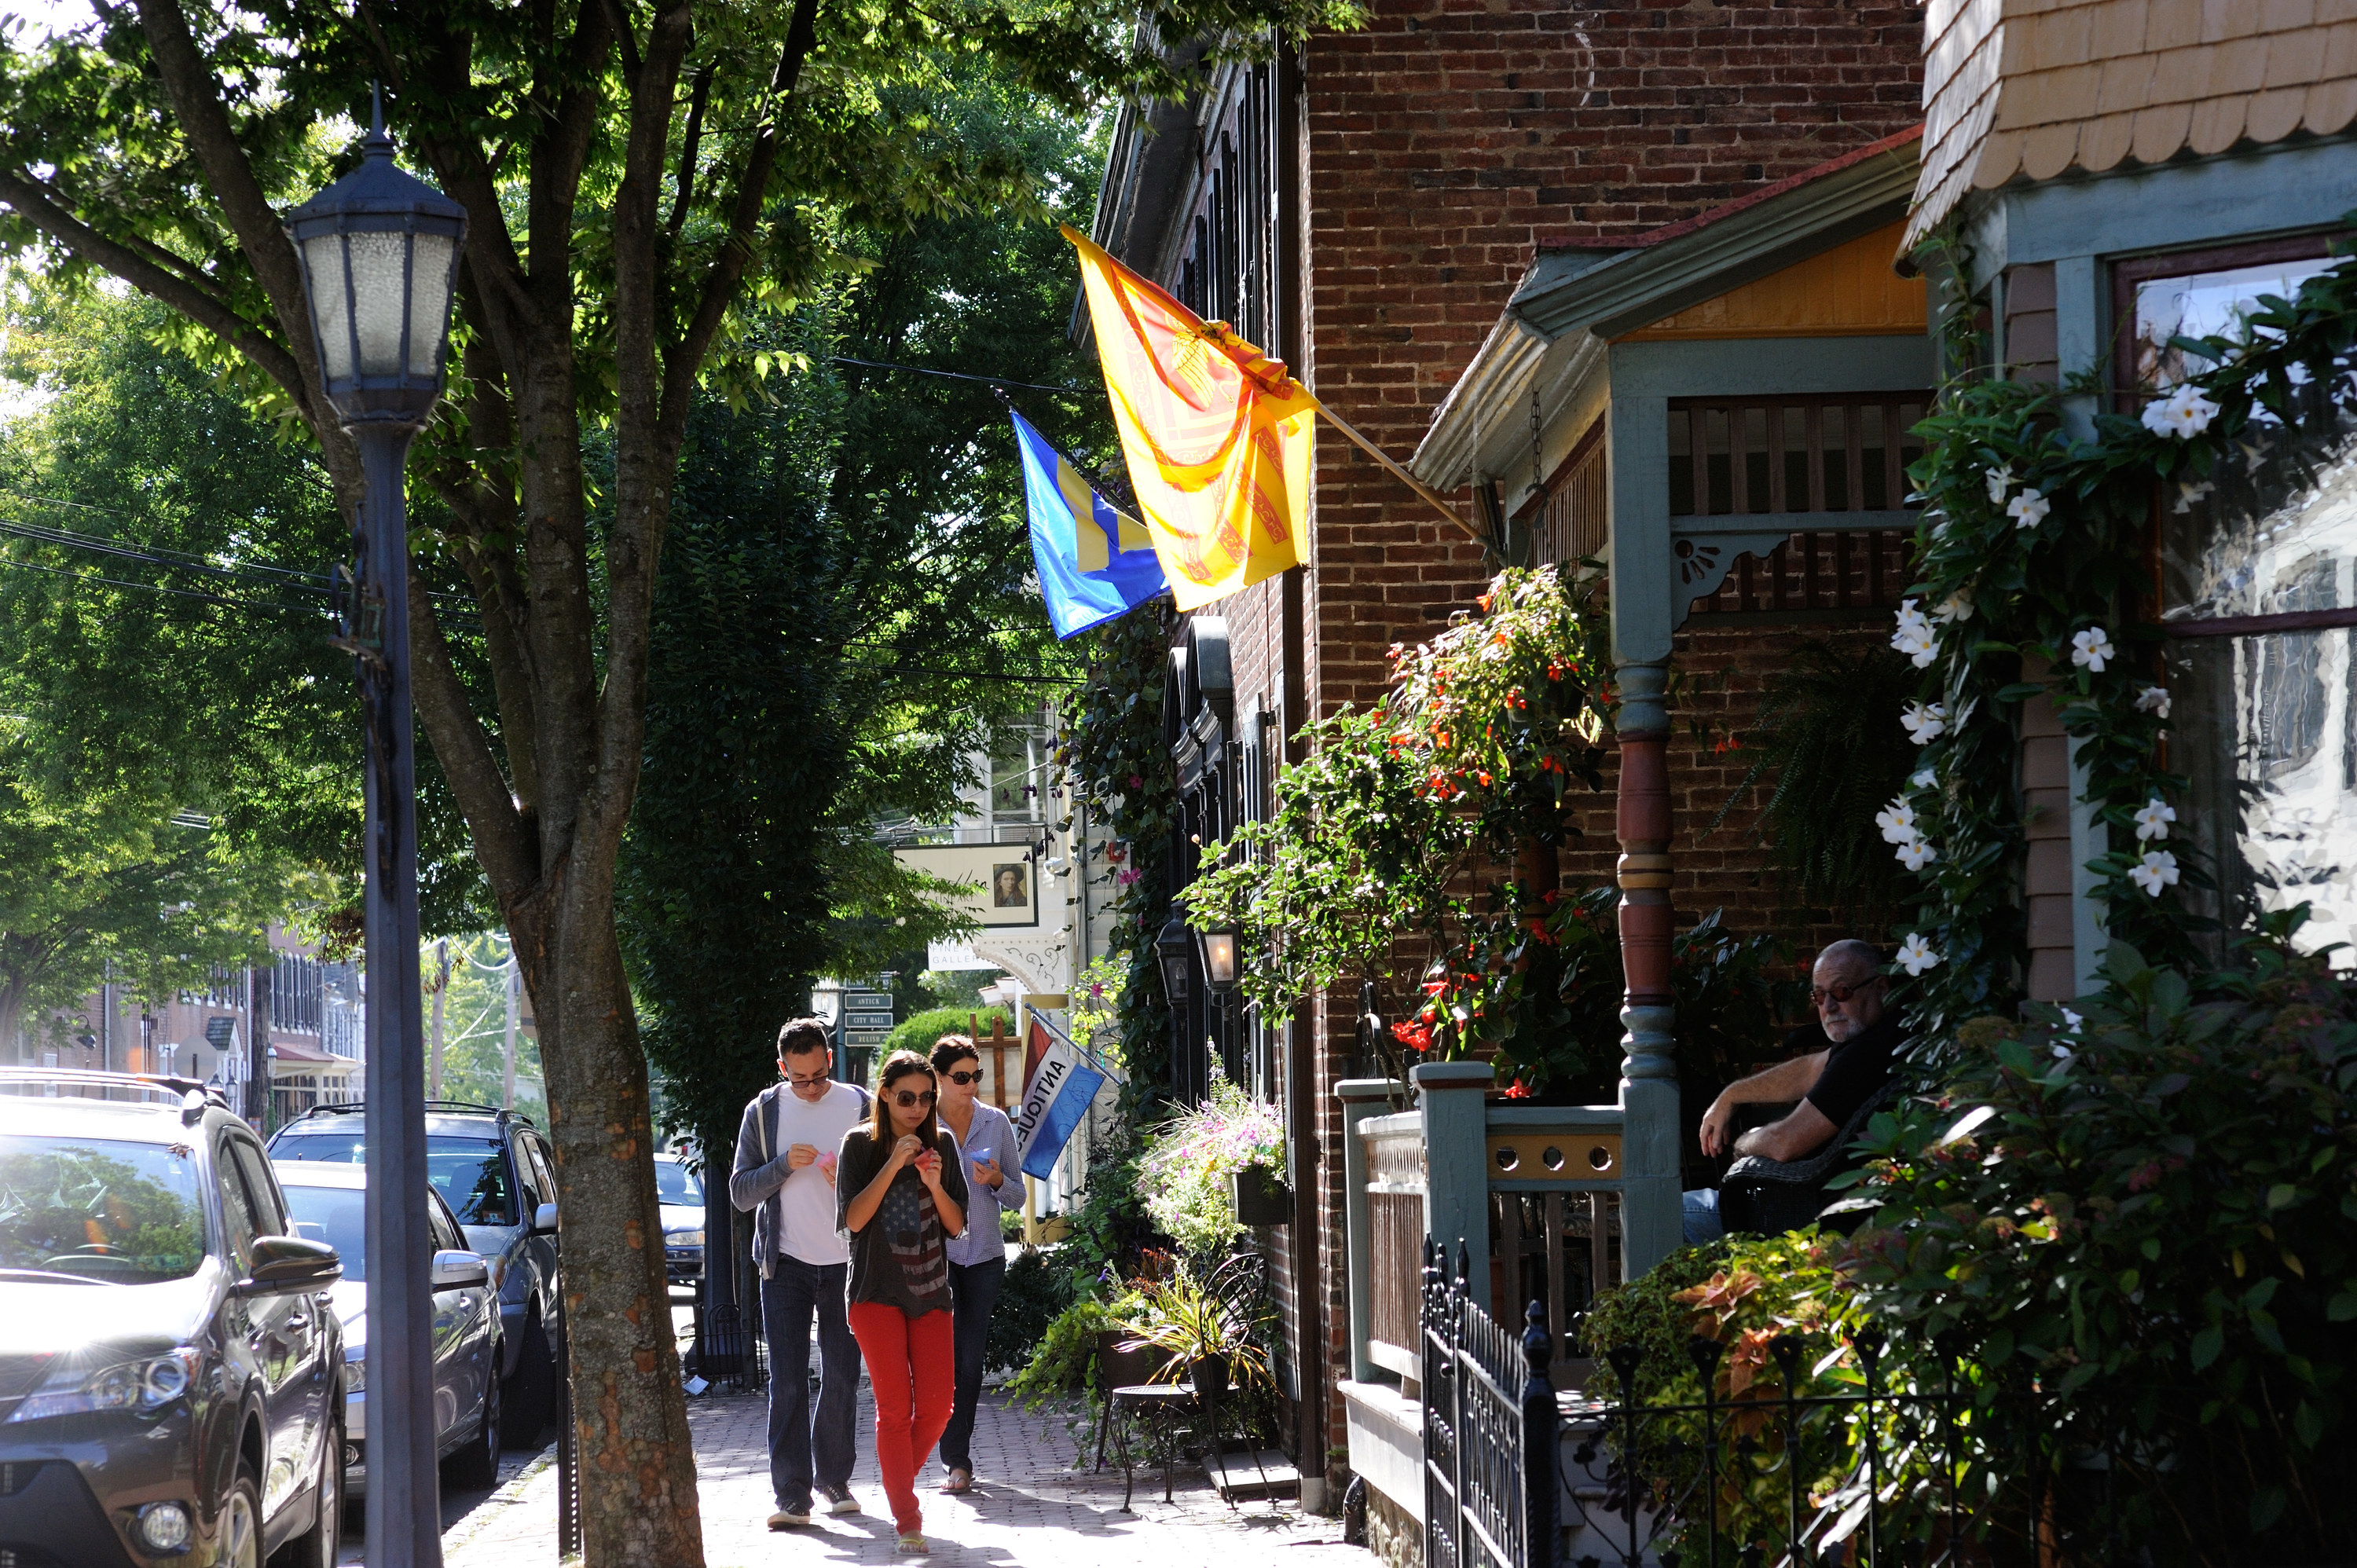 People walking along a street in Lamberville, NJ